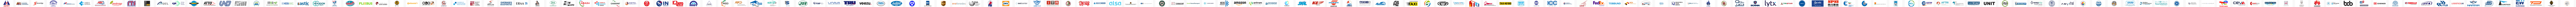 IRU Member logos